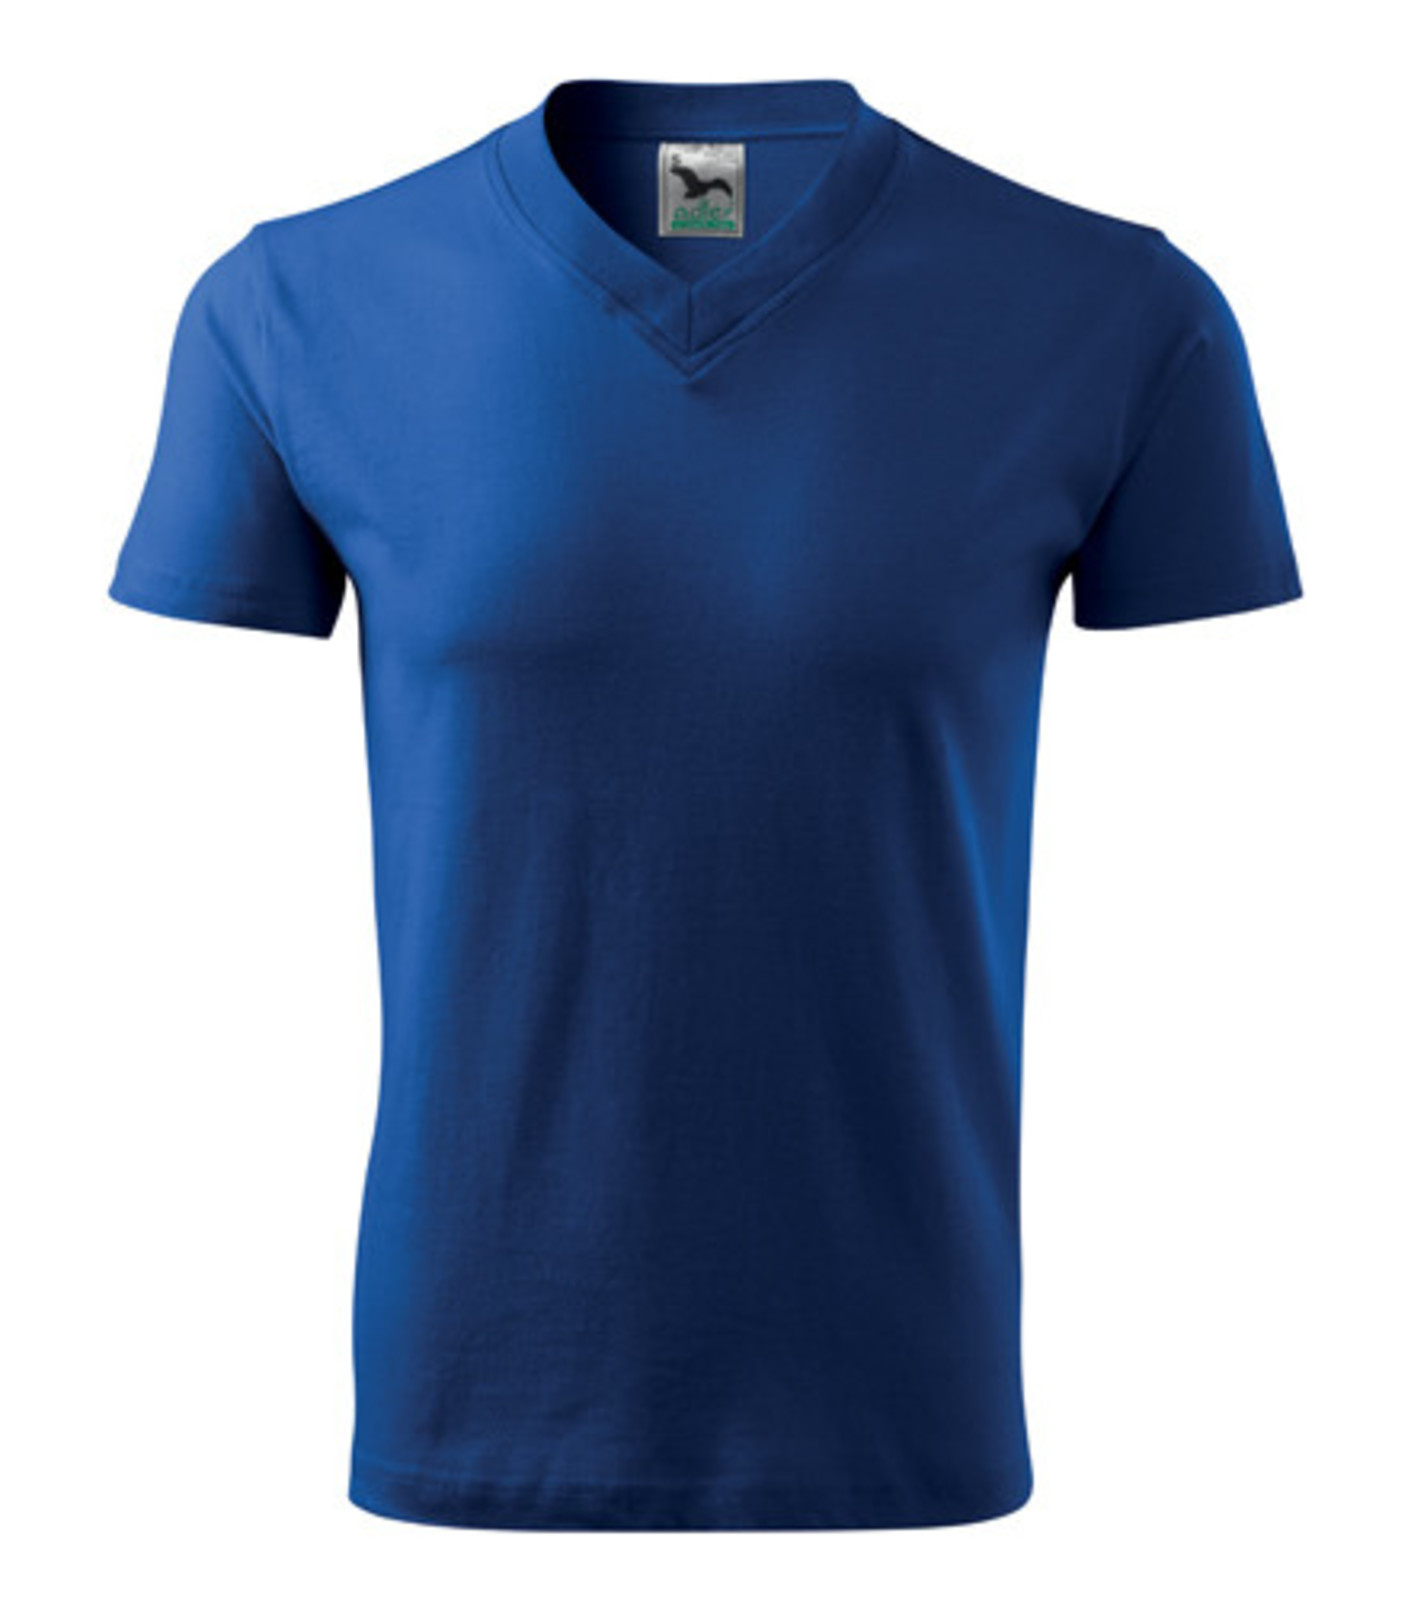 Unisex tričko s výstrihom Adler V-Neck 102 - veľkosť: XL, farba: kráľovská modrá